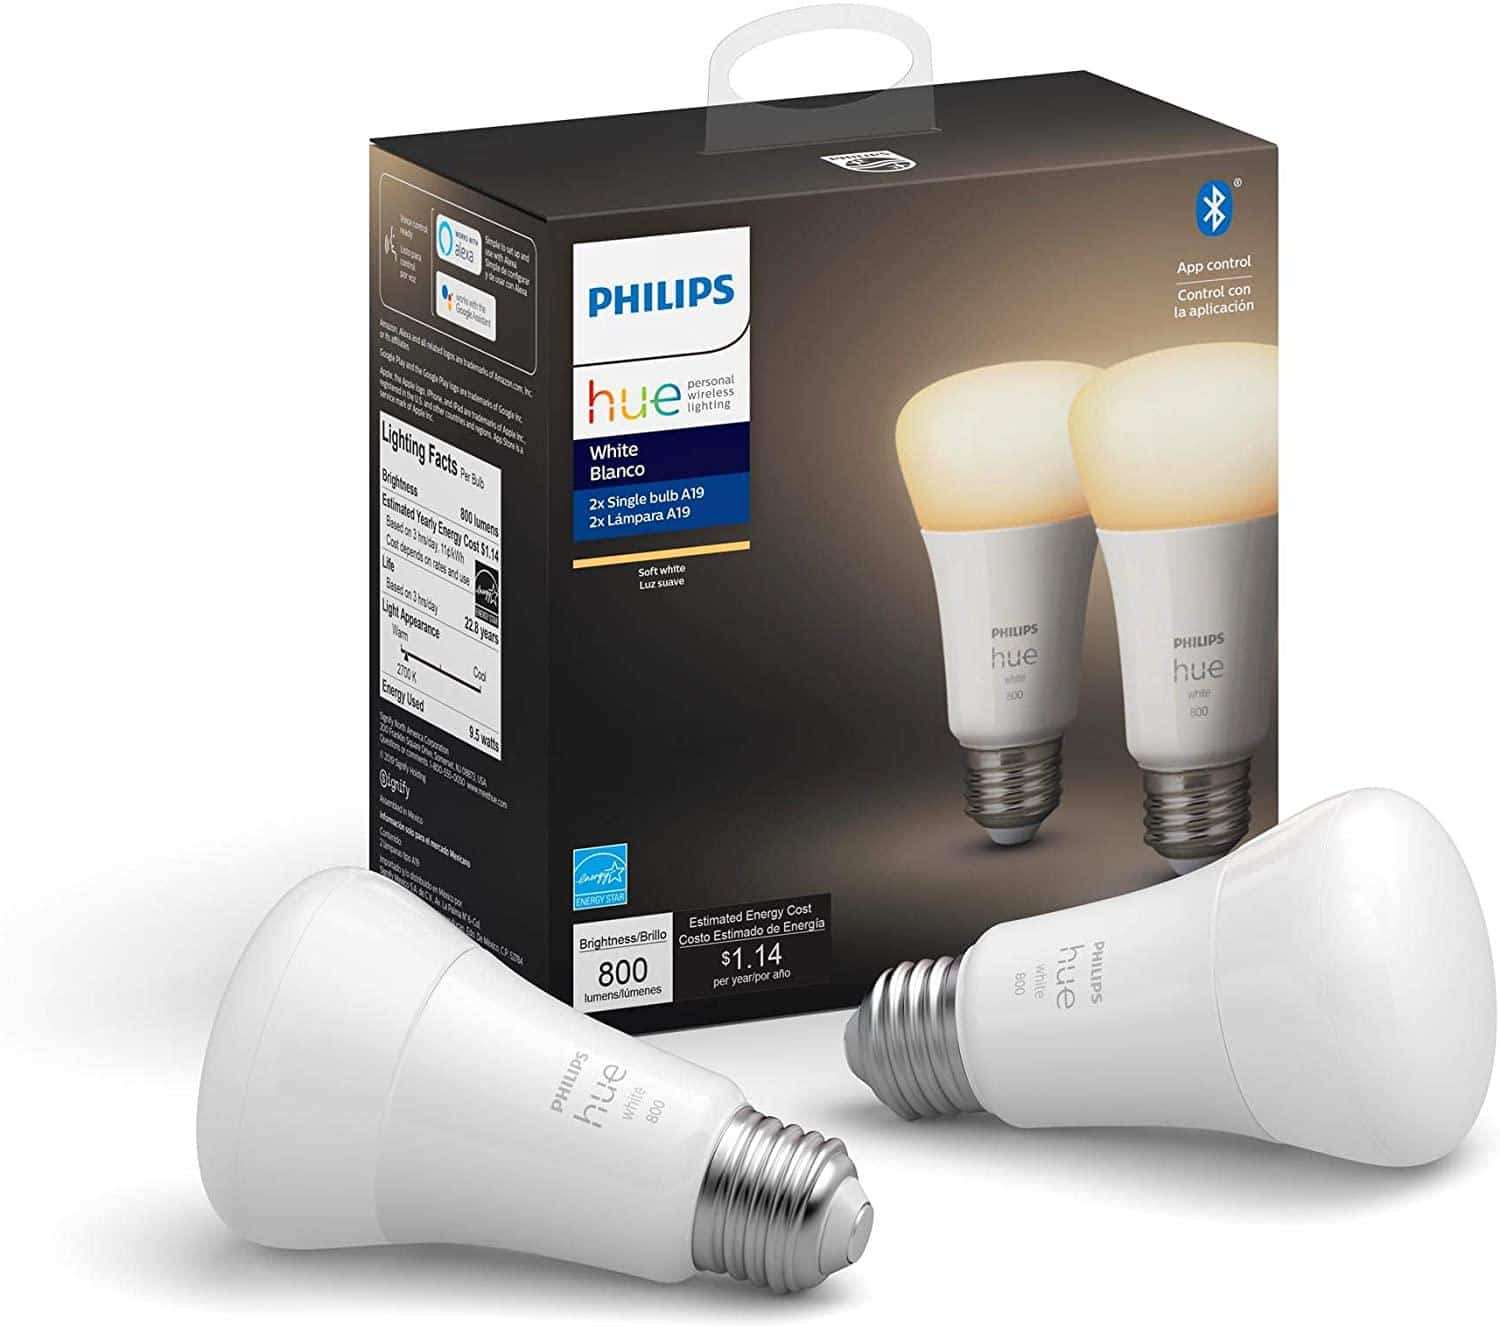 Philips Hue Smart Bulb box and two bulbs